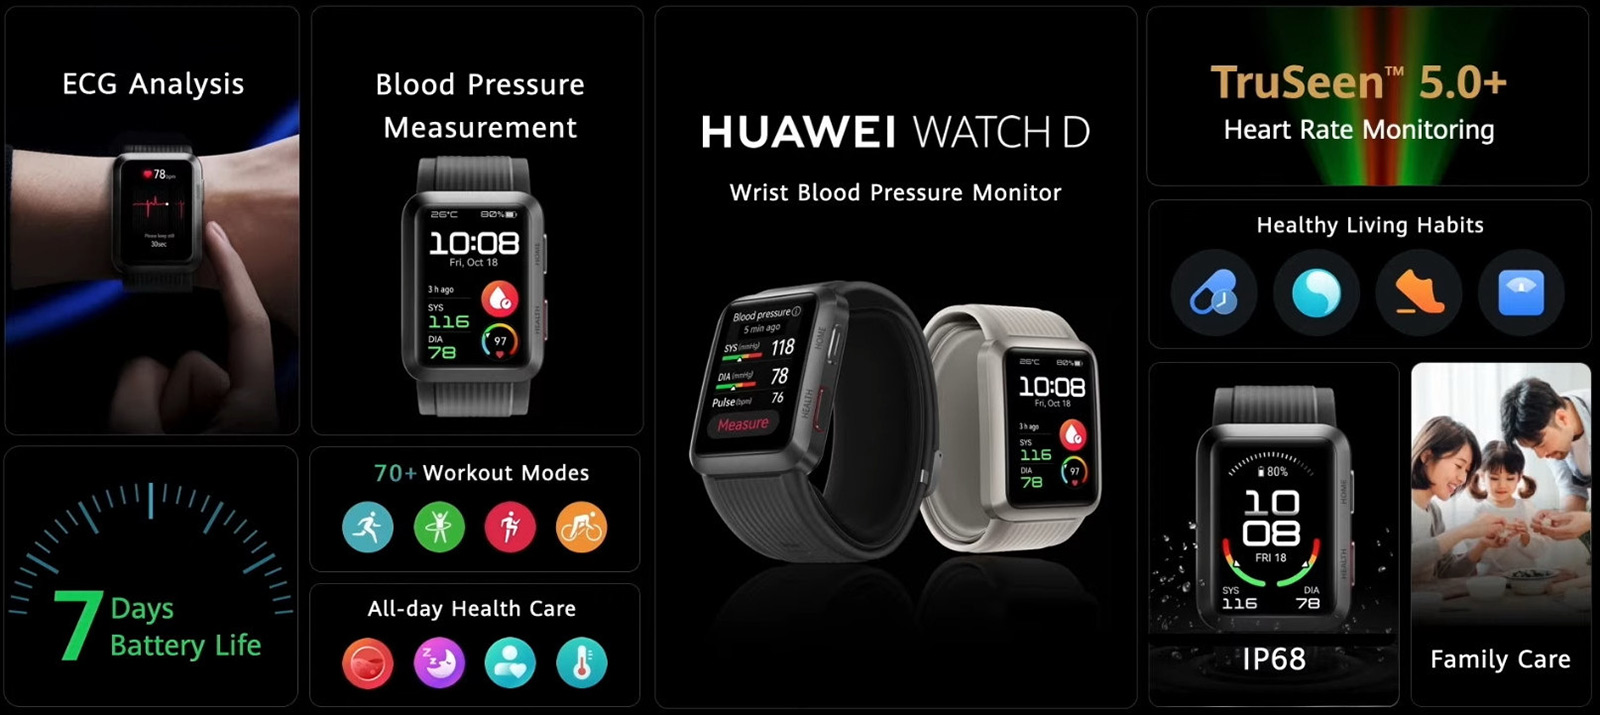 Как подключить часы huawei к телефону, а новейшие смарт-часы и фитнес-трекеры HUAWEI представлены в Европе